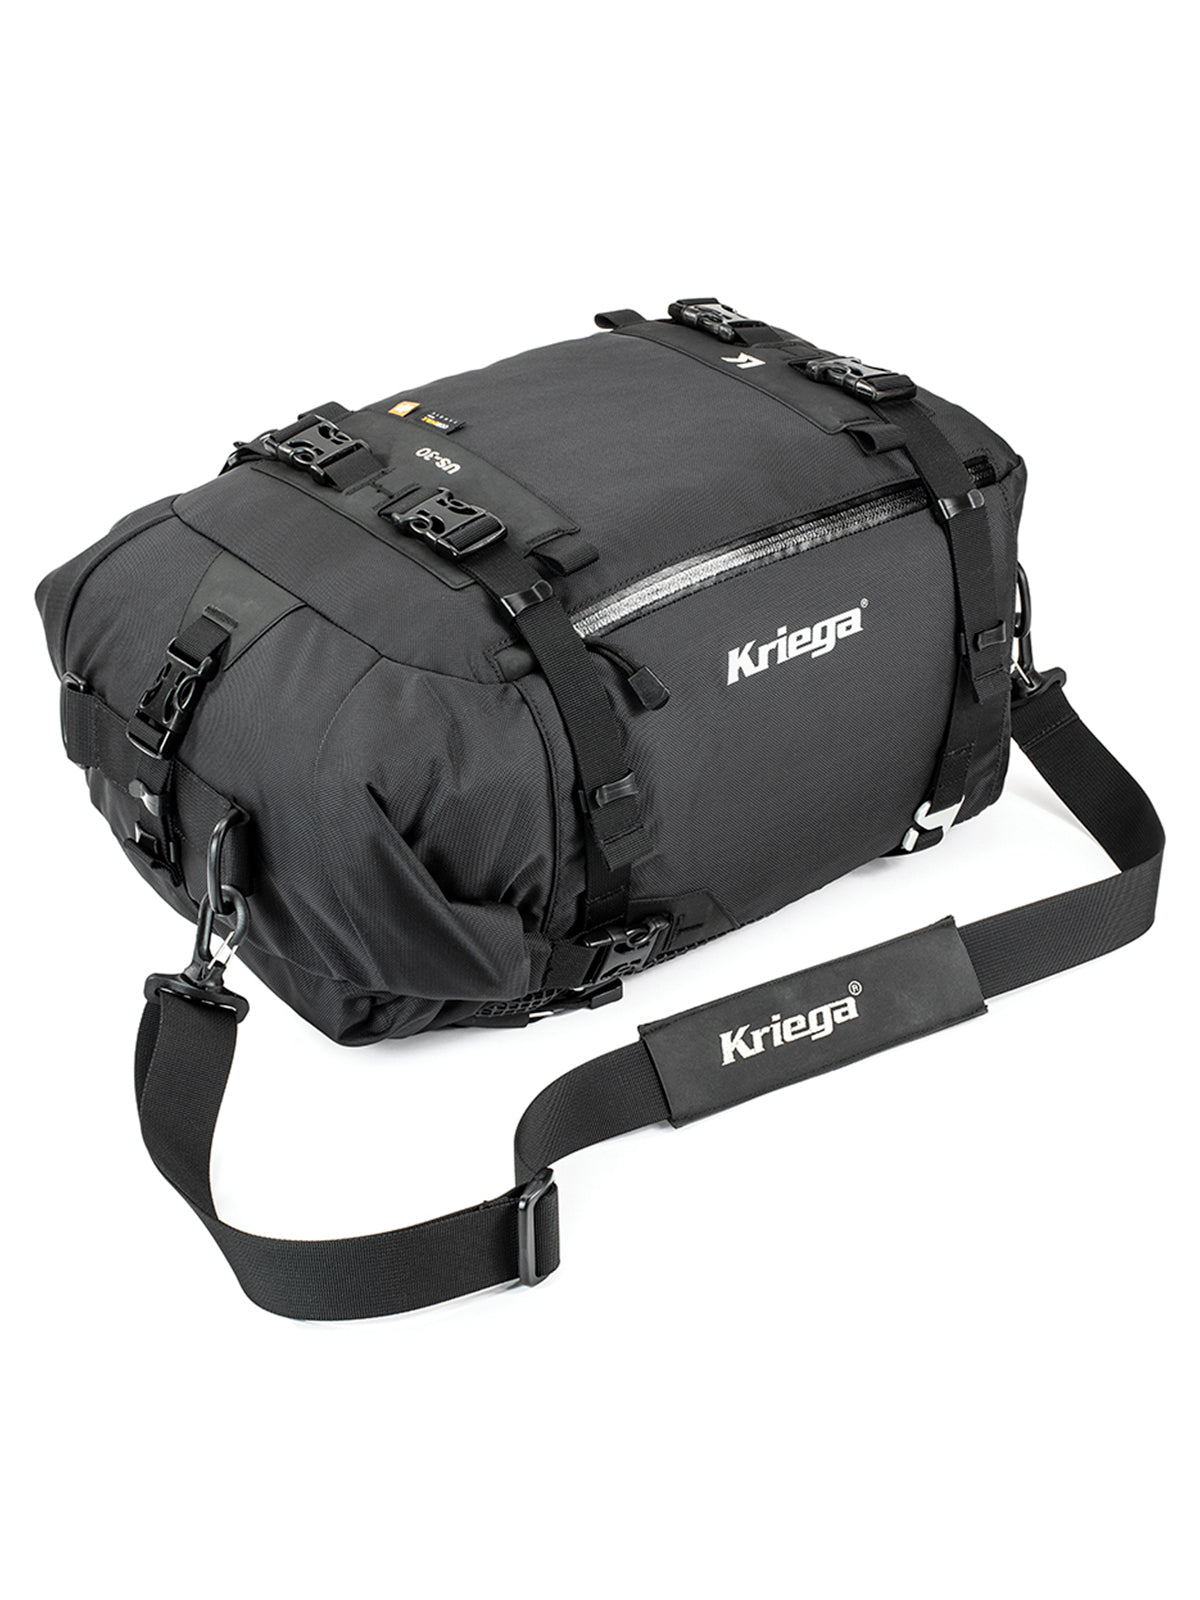 Kriega US30 Drypack shoulder strap